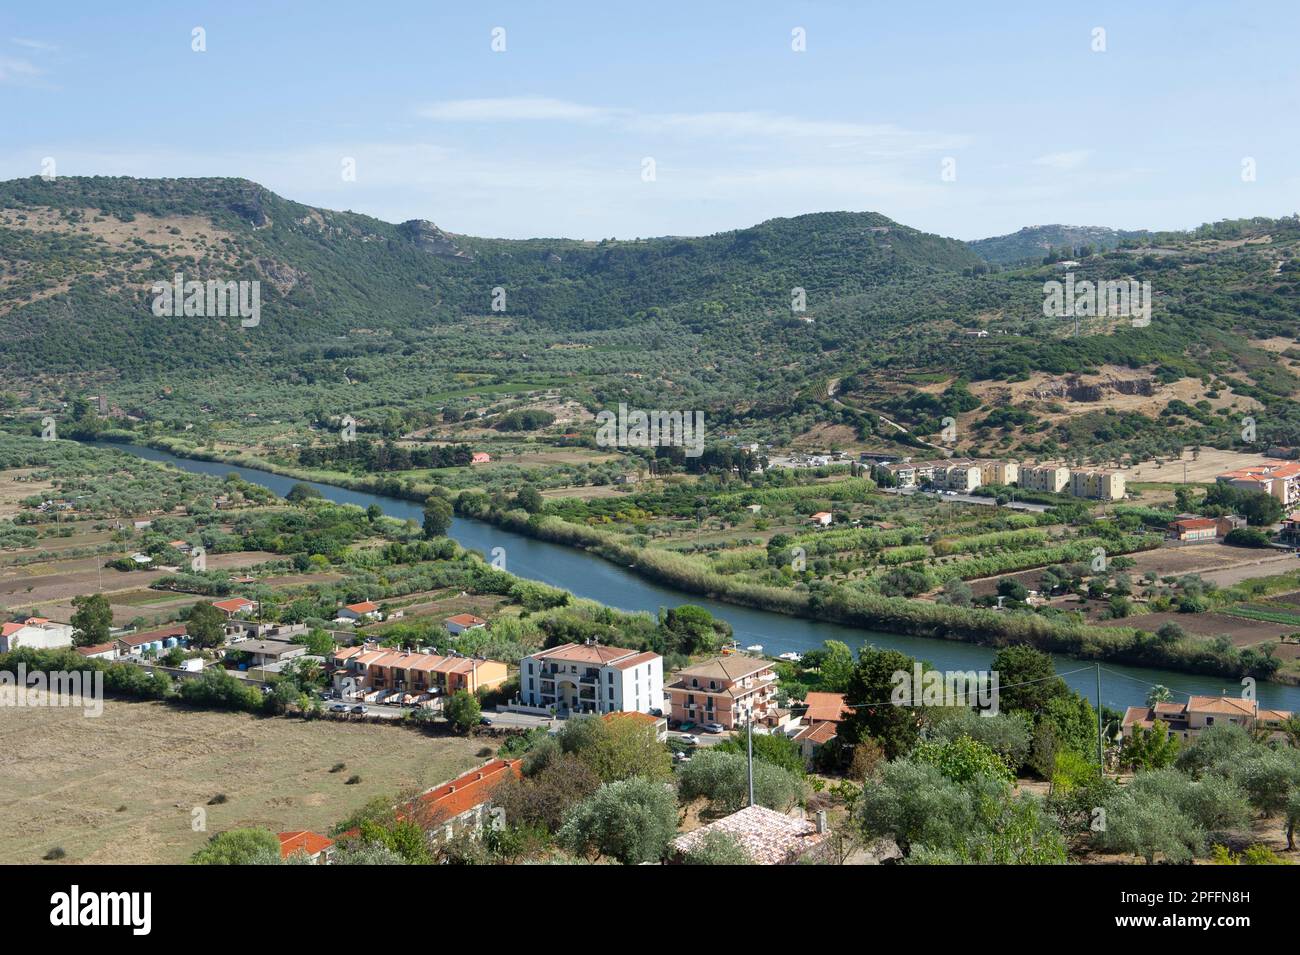 September 03, 2022 – Europa, Italien, Sardinien, Oristano, Blick auf Bosa, das wunderschöne Dorf mit bunten Häusern und das mittelalterliche Schloss Malaspina. Anzeigen Stockfoto